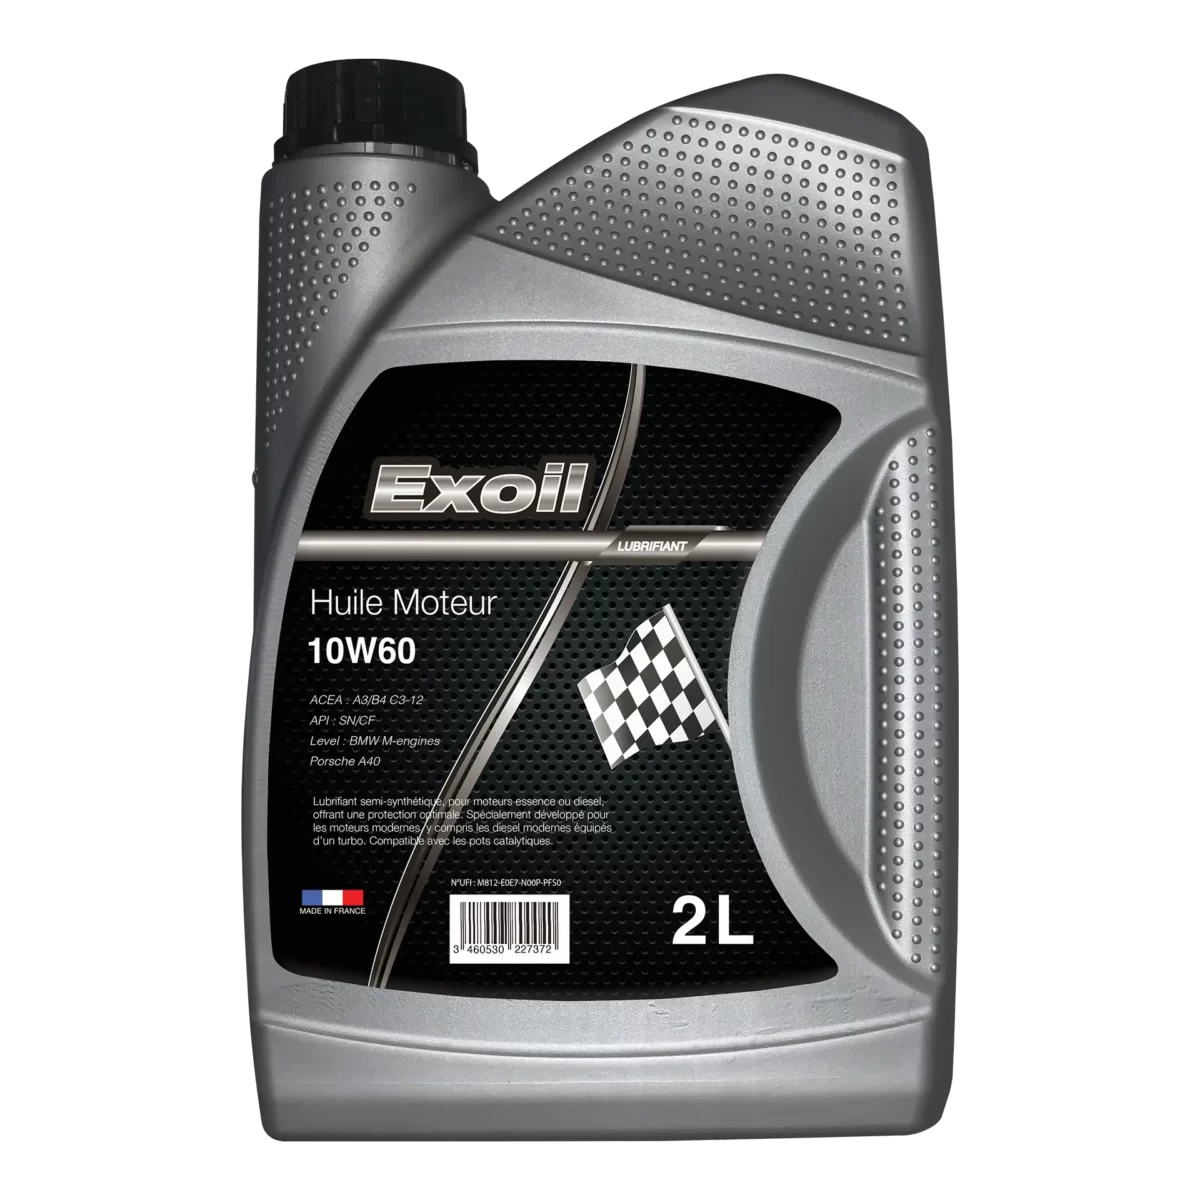 Exoil - Bidon d'huile moteur compétition 10W60 - 2L